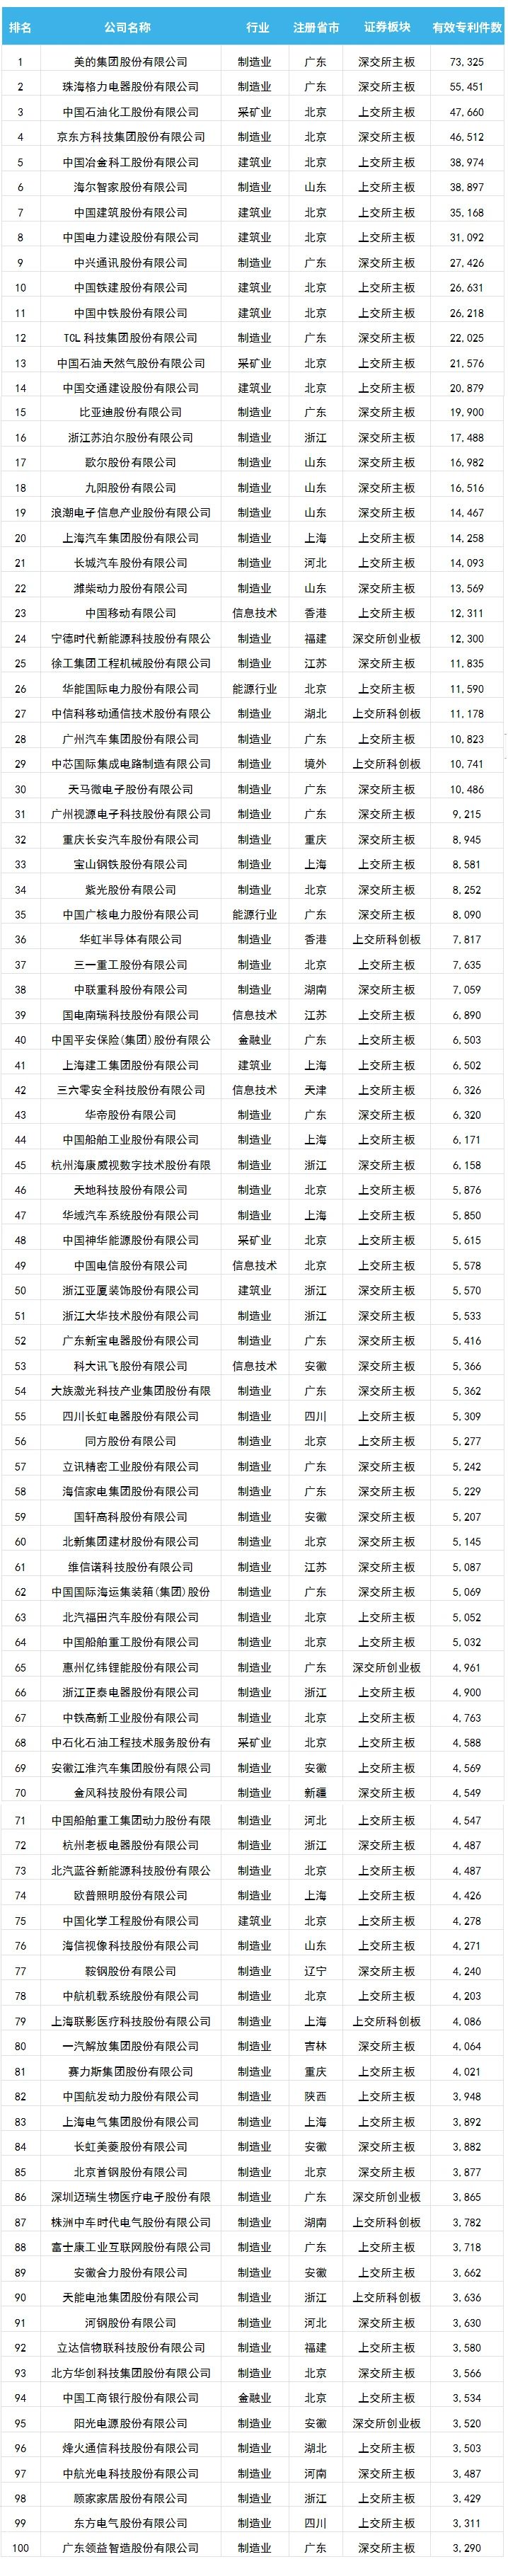 中国上市公司有效专利排行榜TOP100